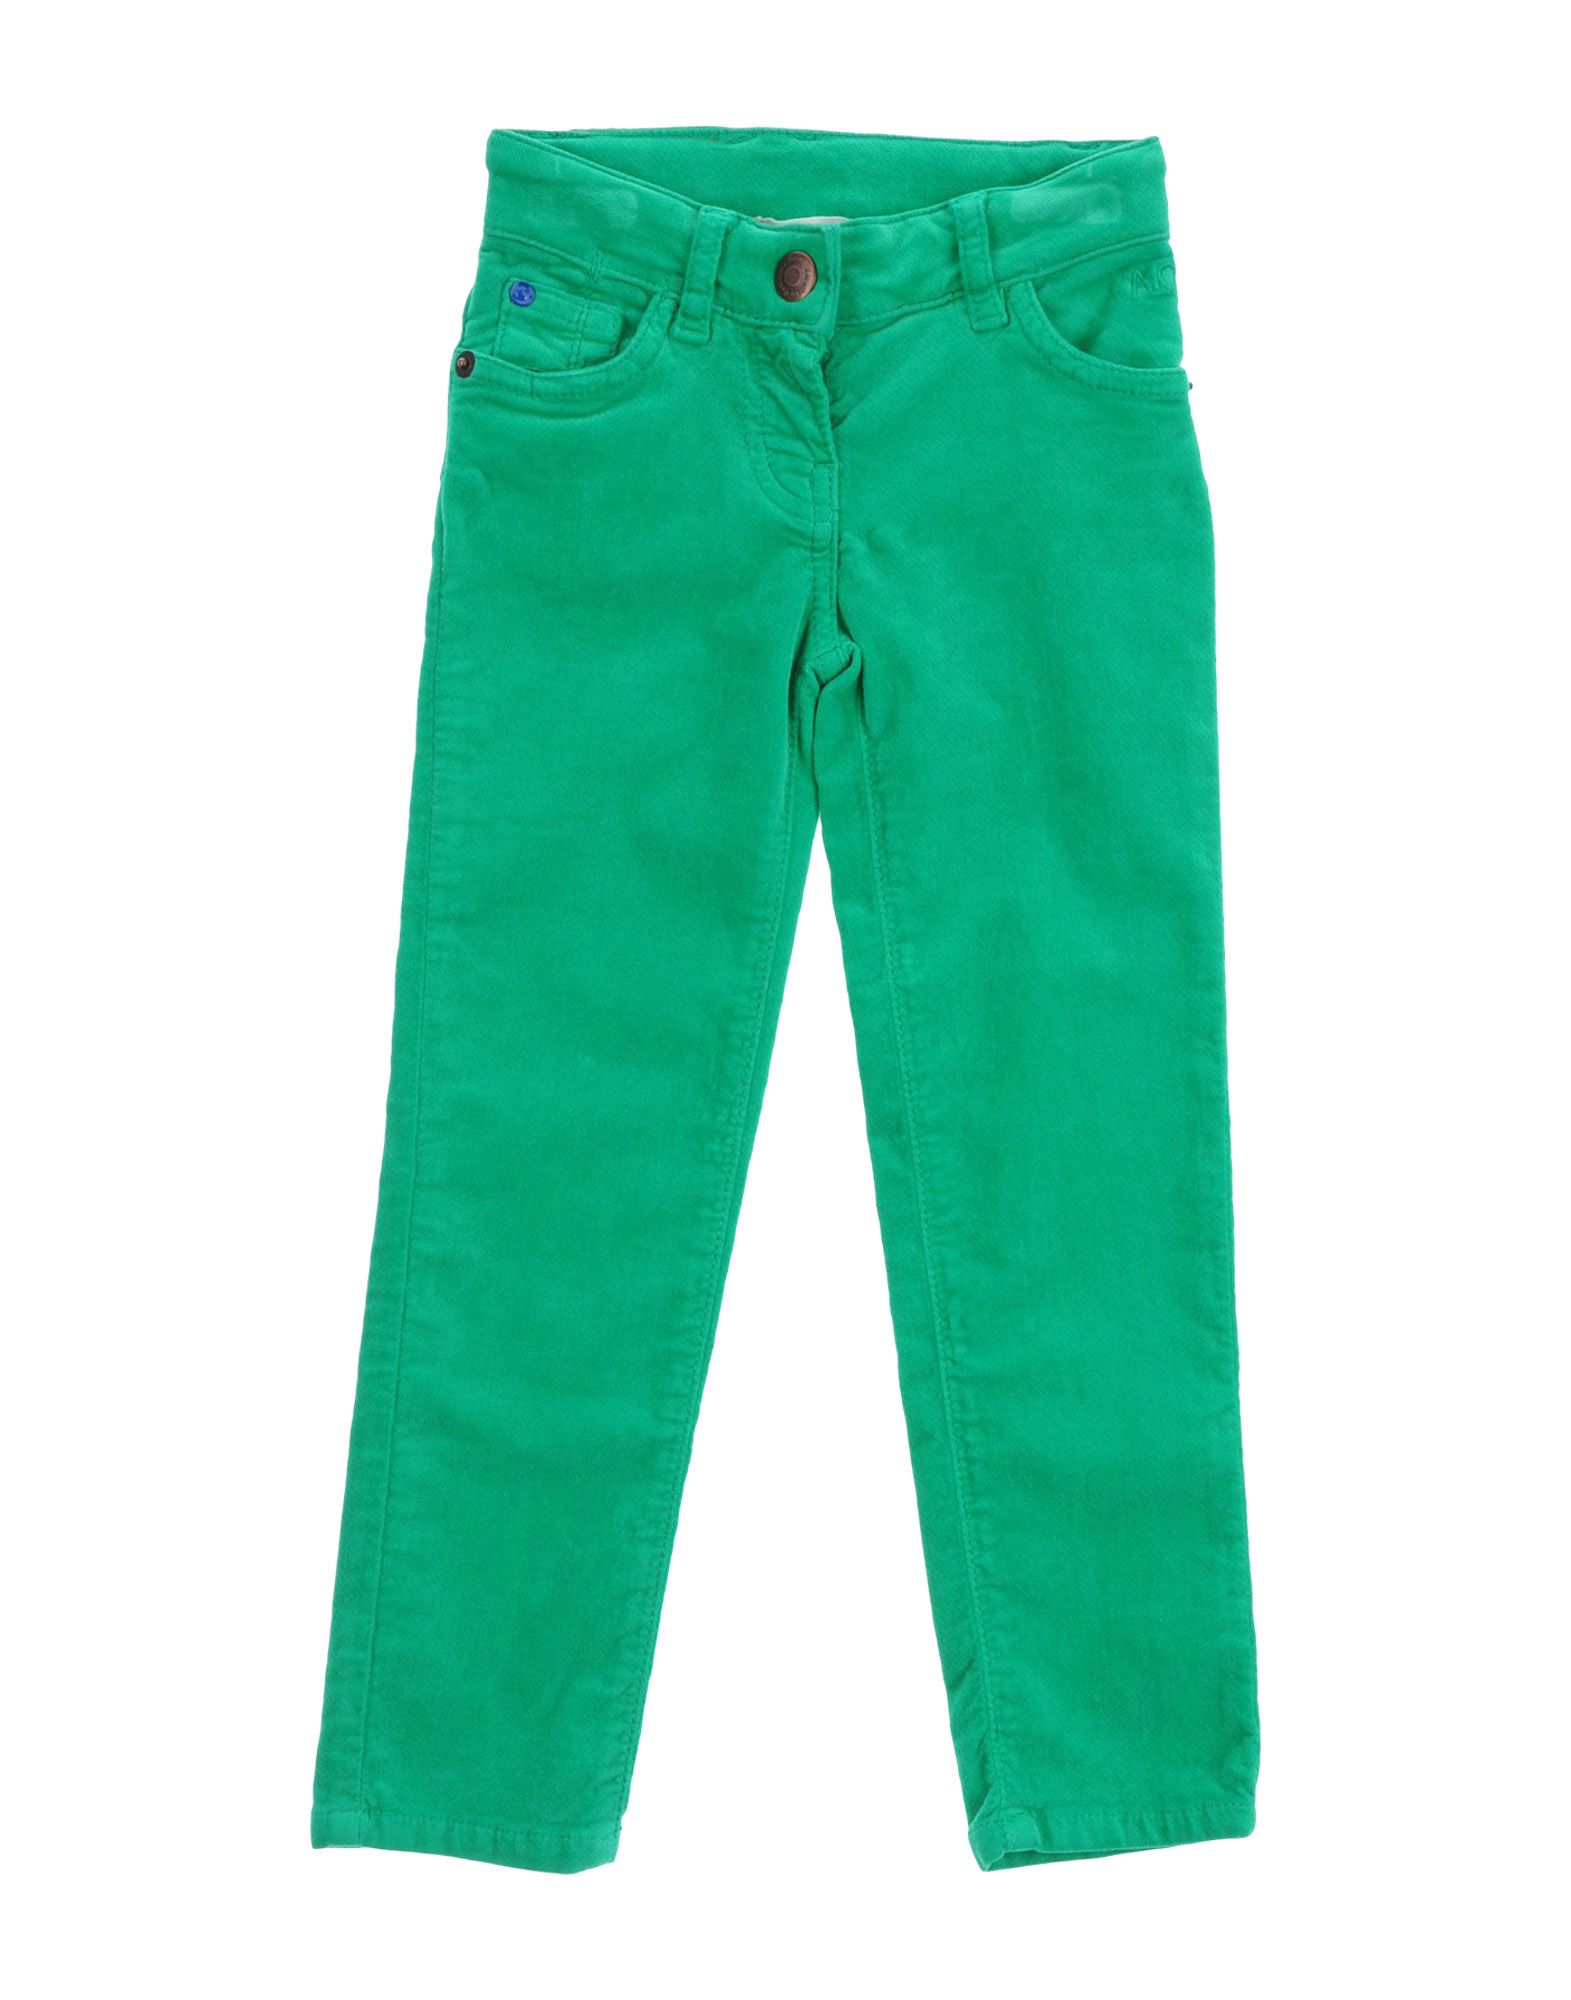 Foto American Outfitters Pantalones Niña Verde foto 903325